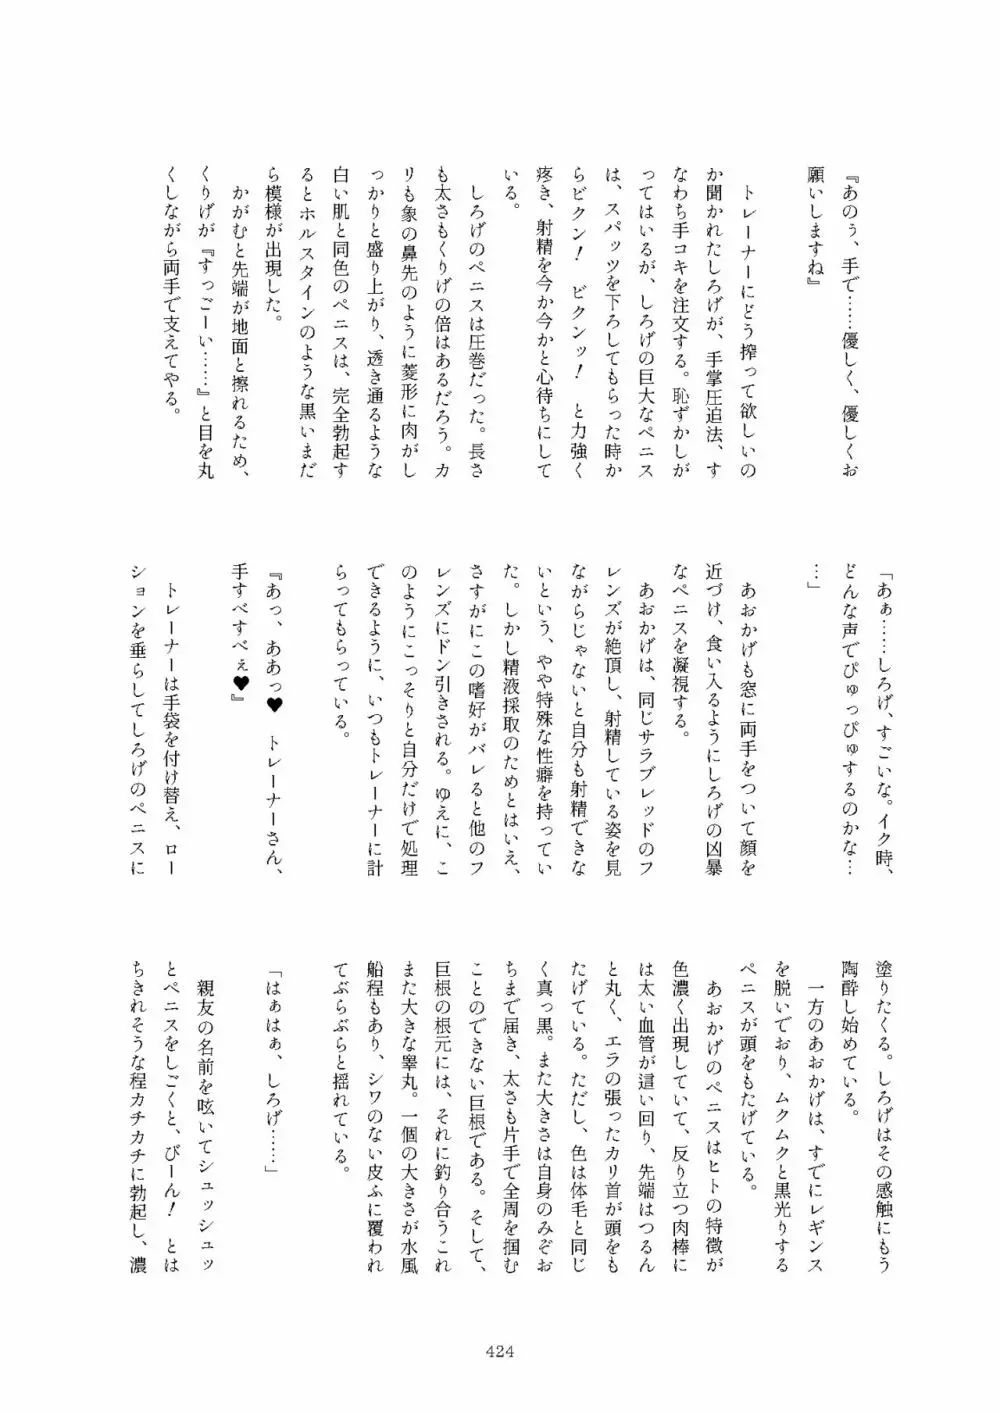 フレンズまえしっぽ合同誌 - page424